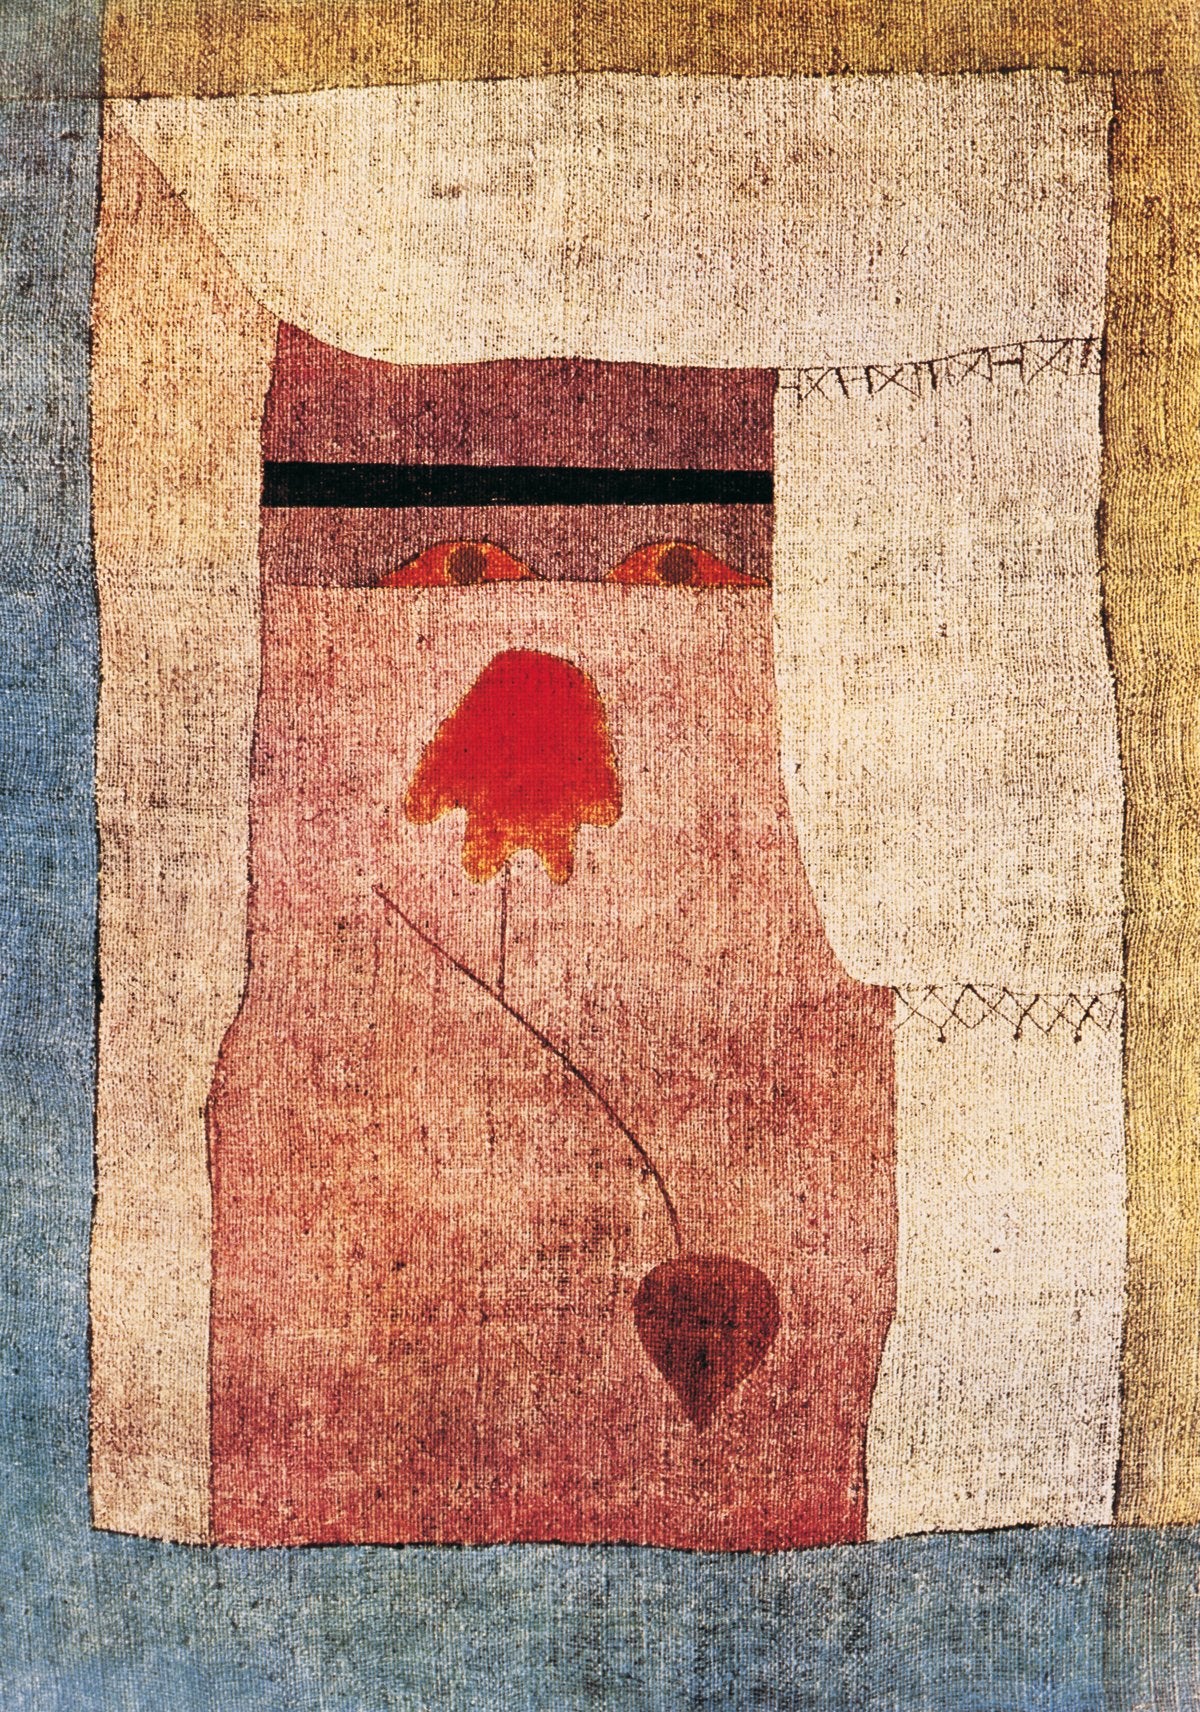 Paul Klee - Arab Song